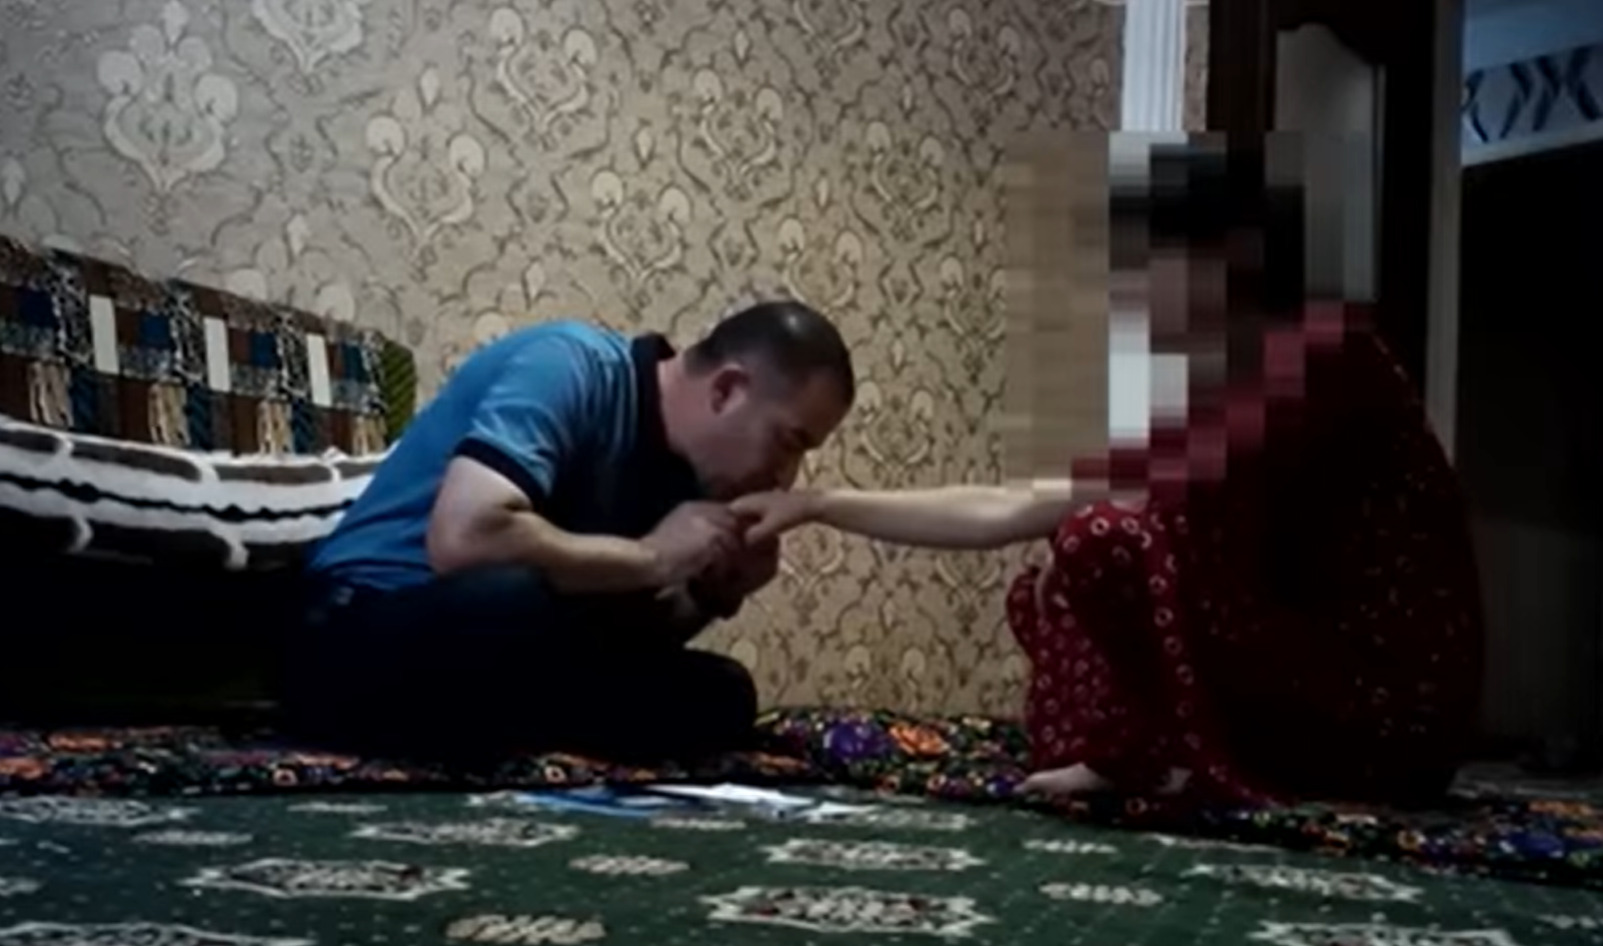 Порно Домашний таджикский секс мужа и жены дома на кровати смотреть онлайн